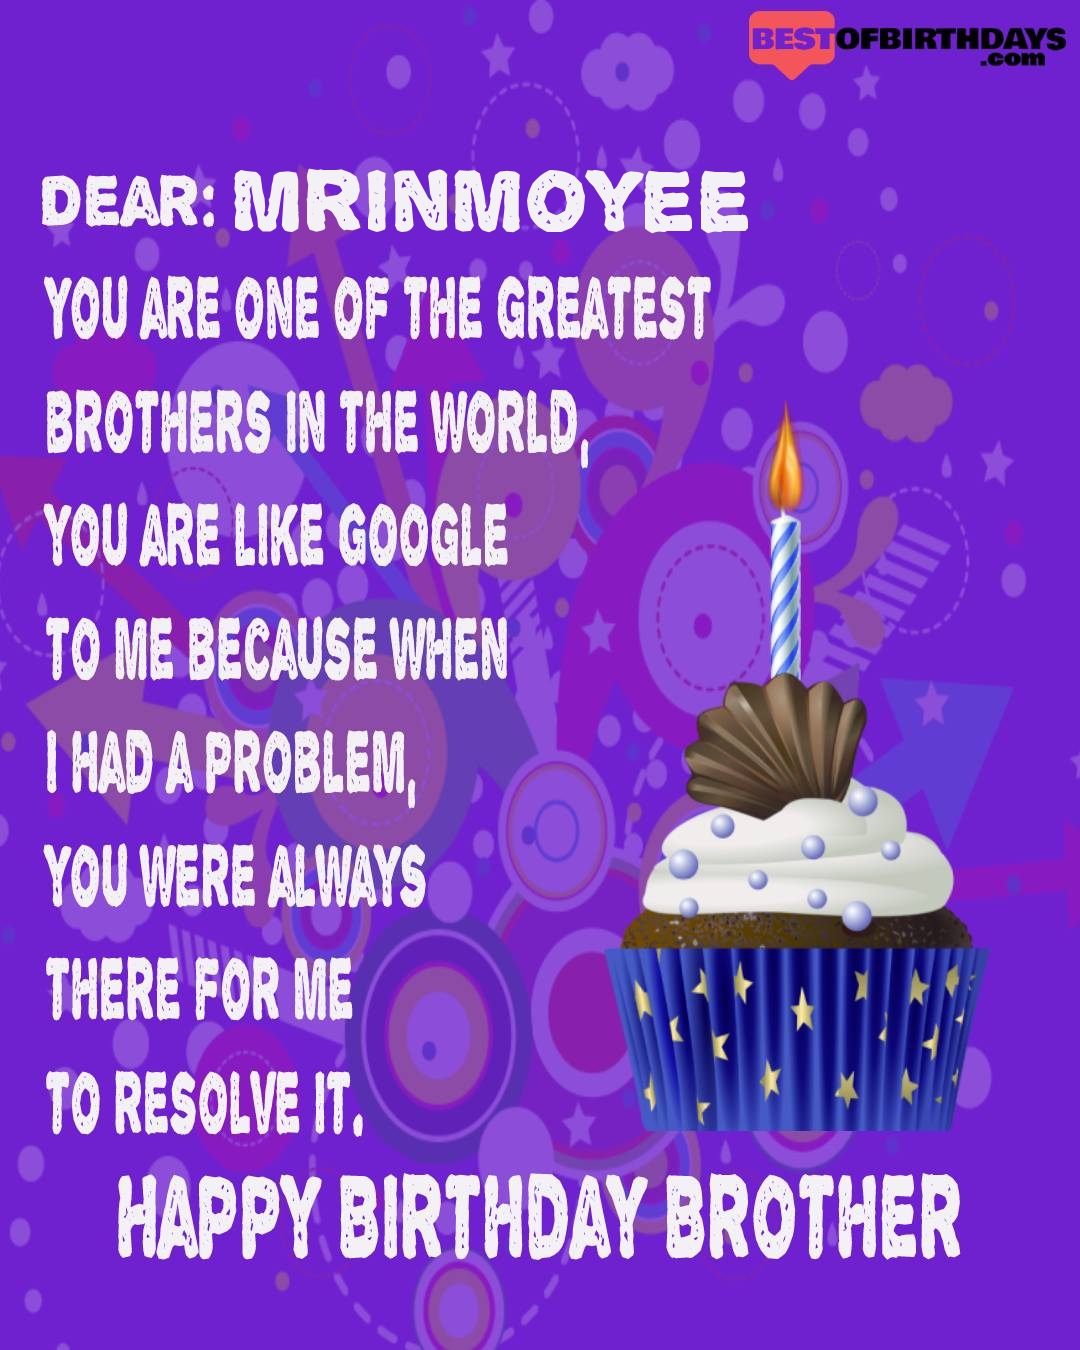 Happy birthday mrinmoyee bhai brother bro